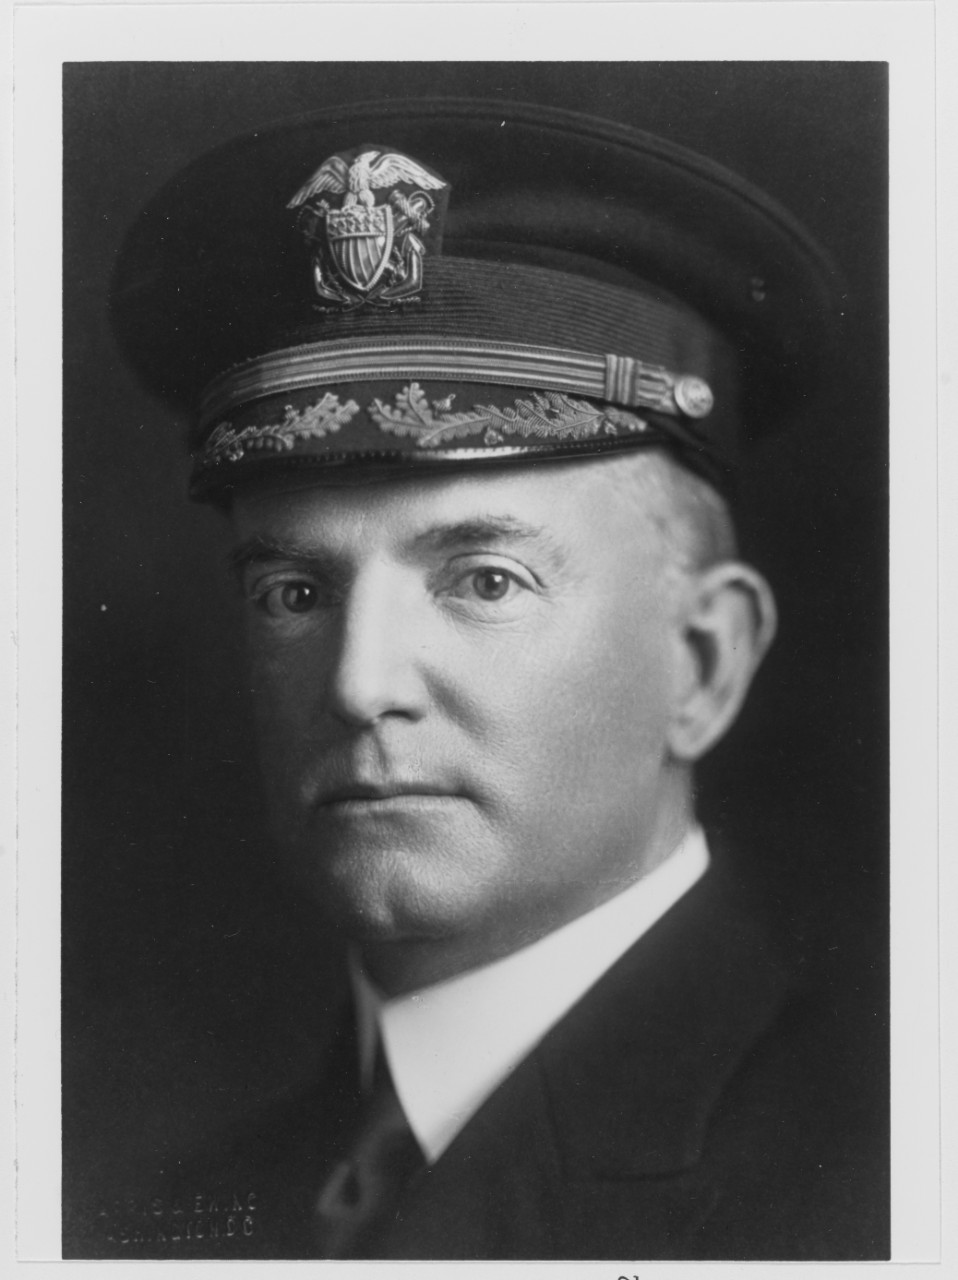 Captain William A. Moffett, USN